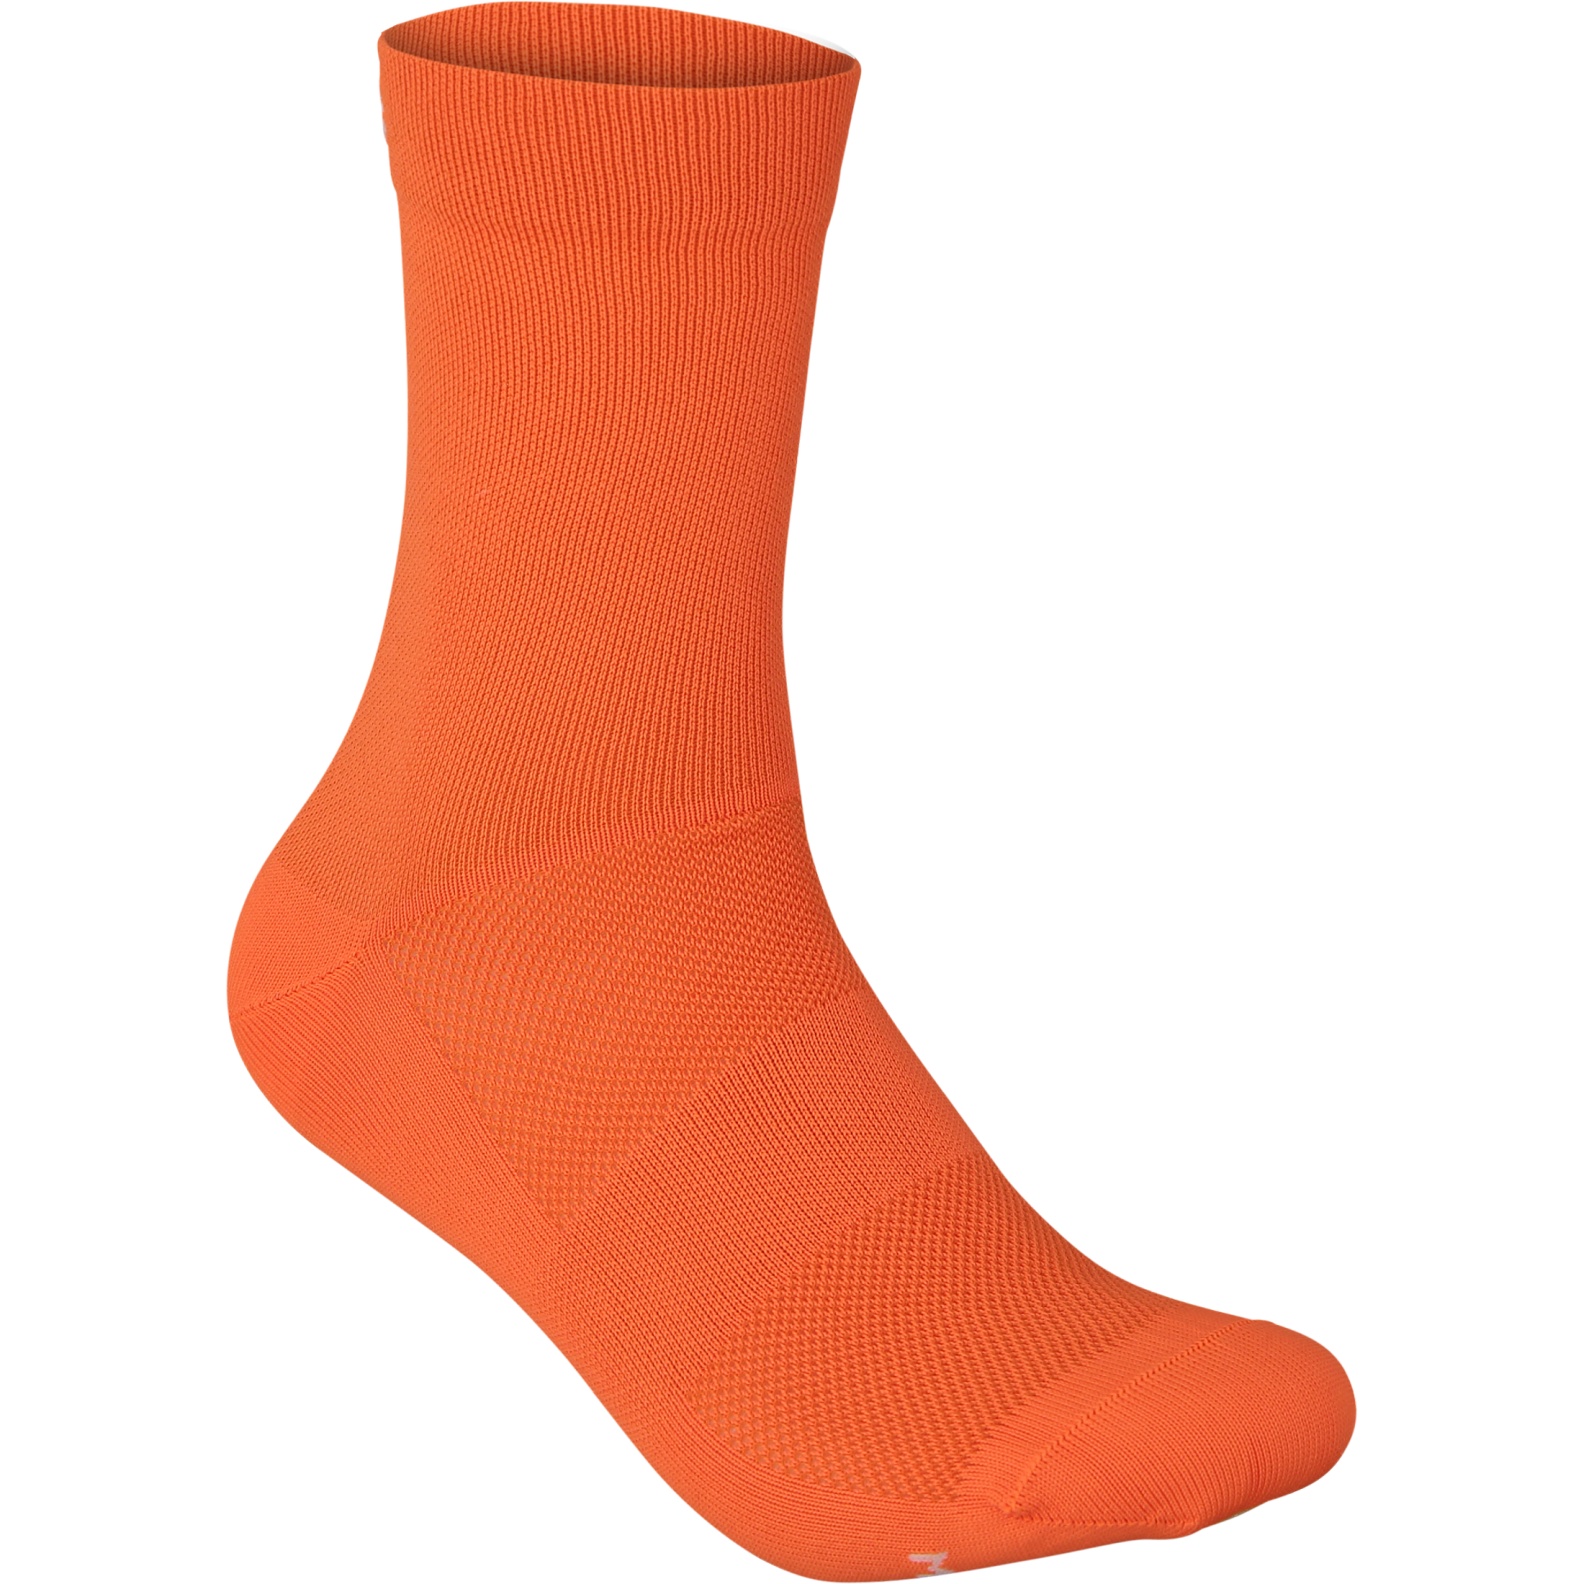 Produktbild von POC Fluo Socken mittellang - 9050 fluorescent orange